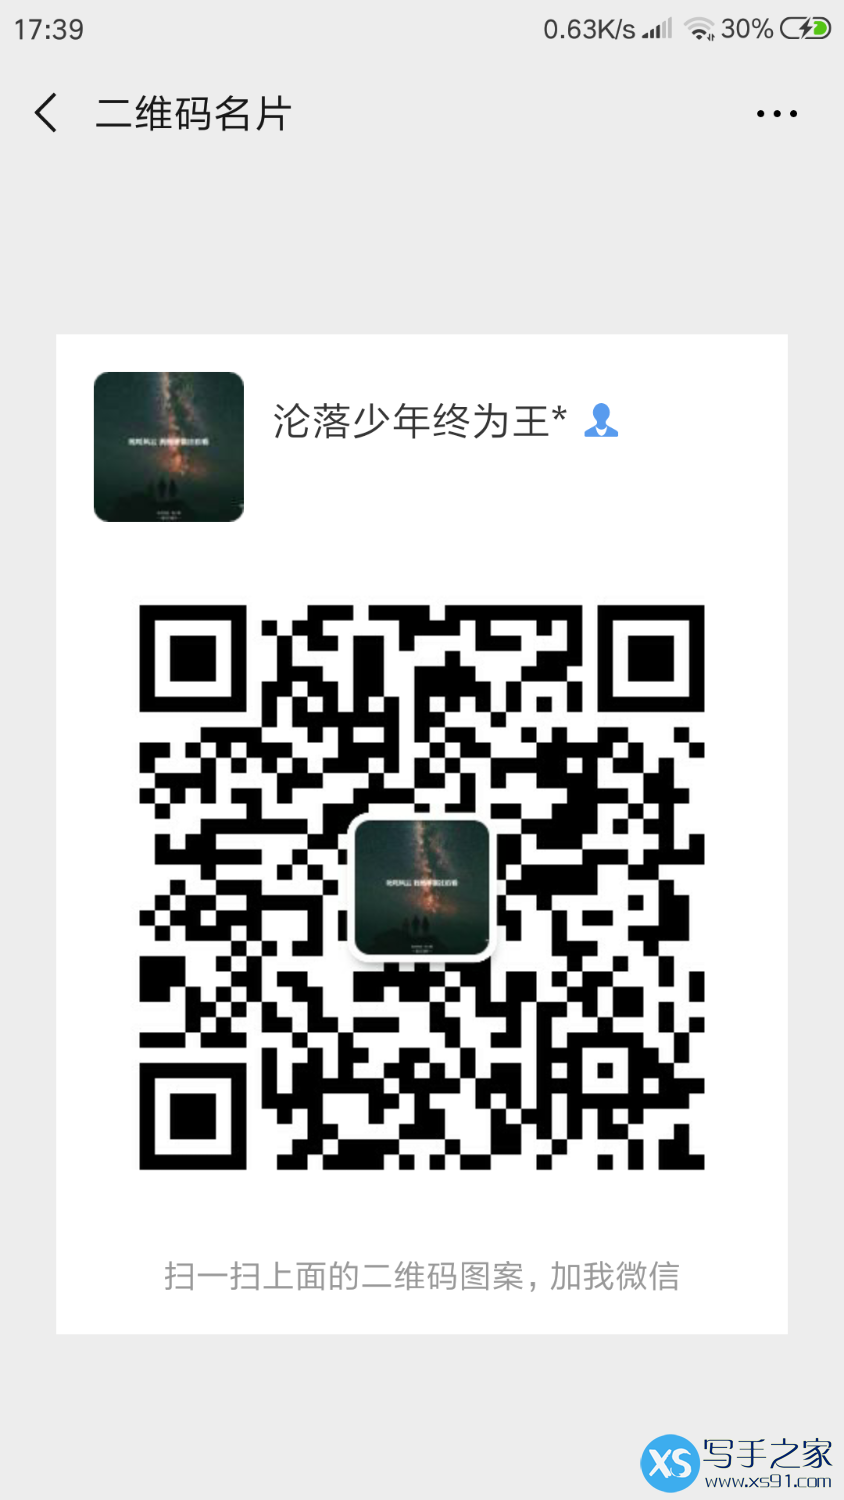 Screenshot_2019-03-22-17-39-37-330_com.tencent.mm.png